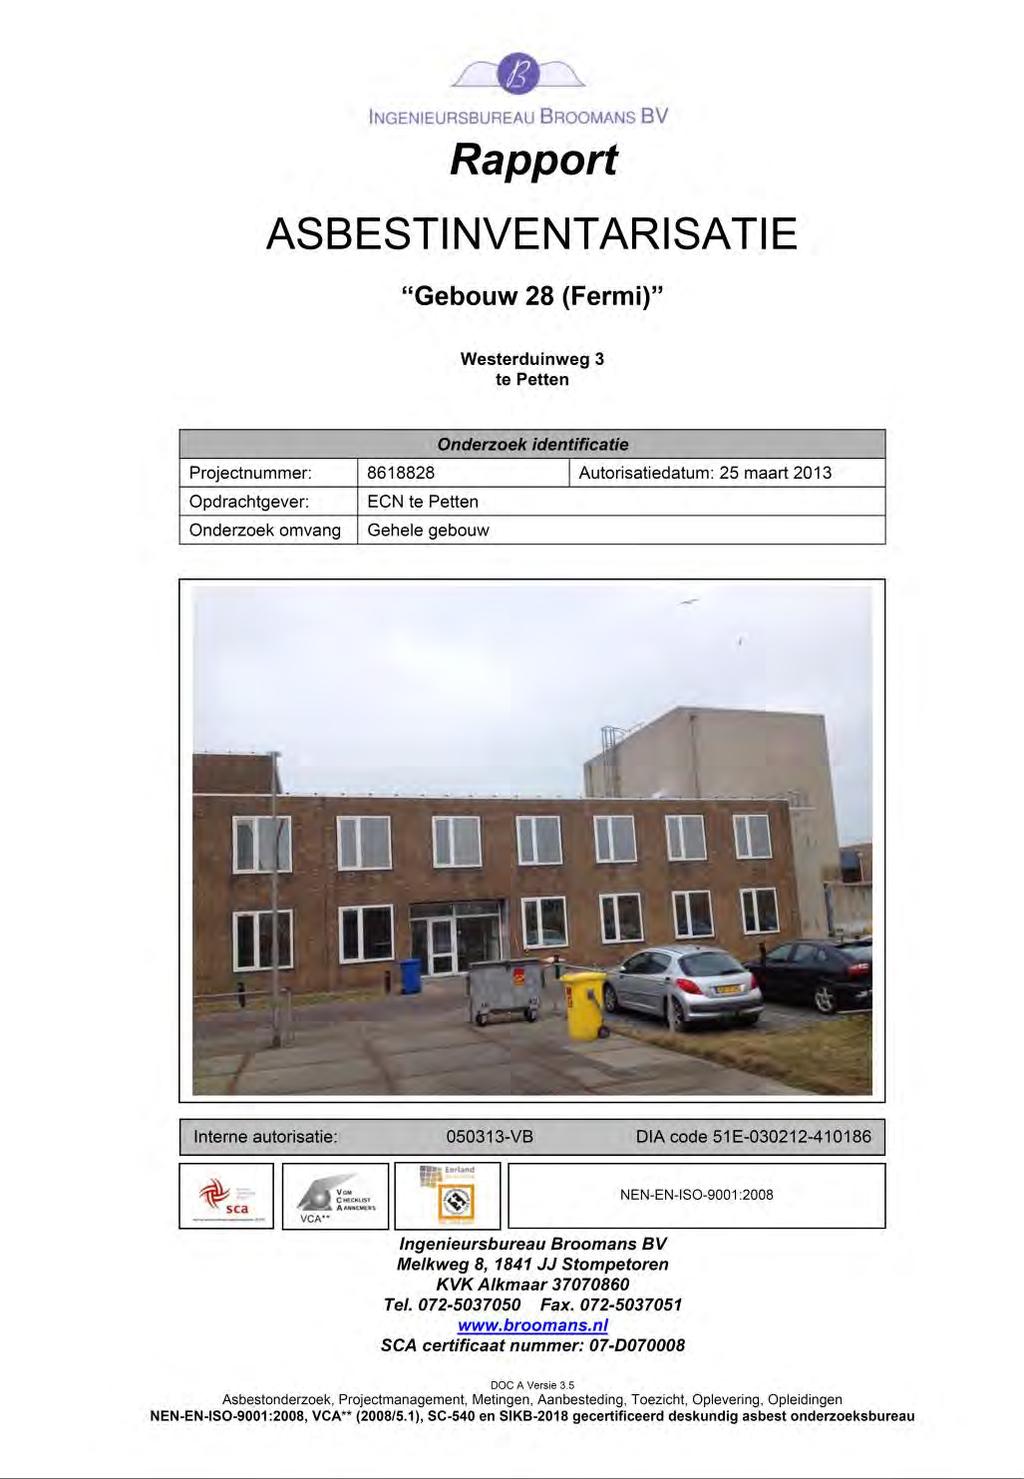 Bijlage F Rapport Asbestinventarisatie maart 2013 Ingenieursbureau Broomans BV